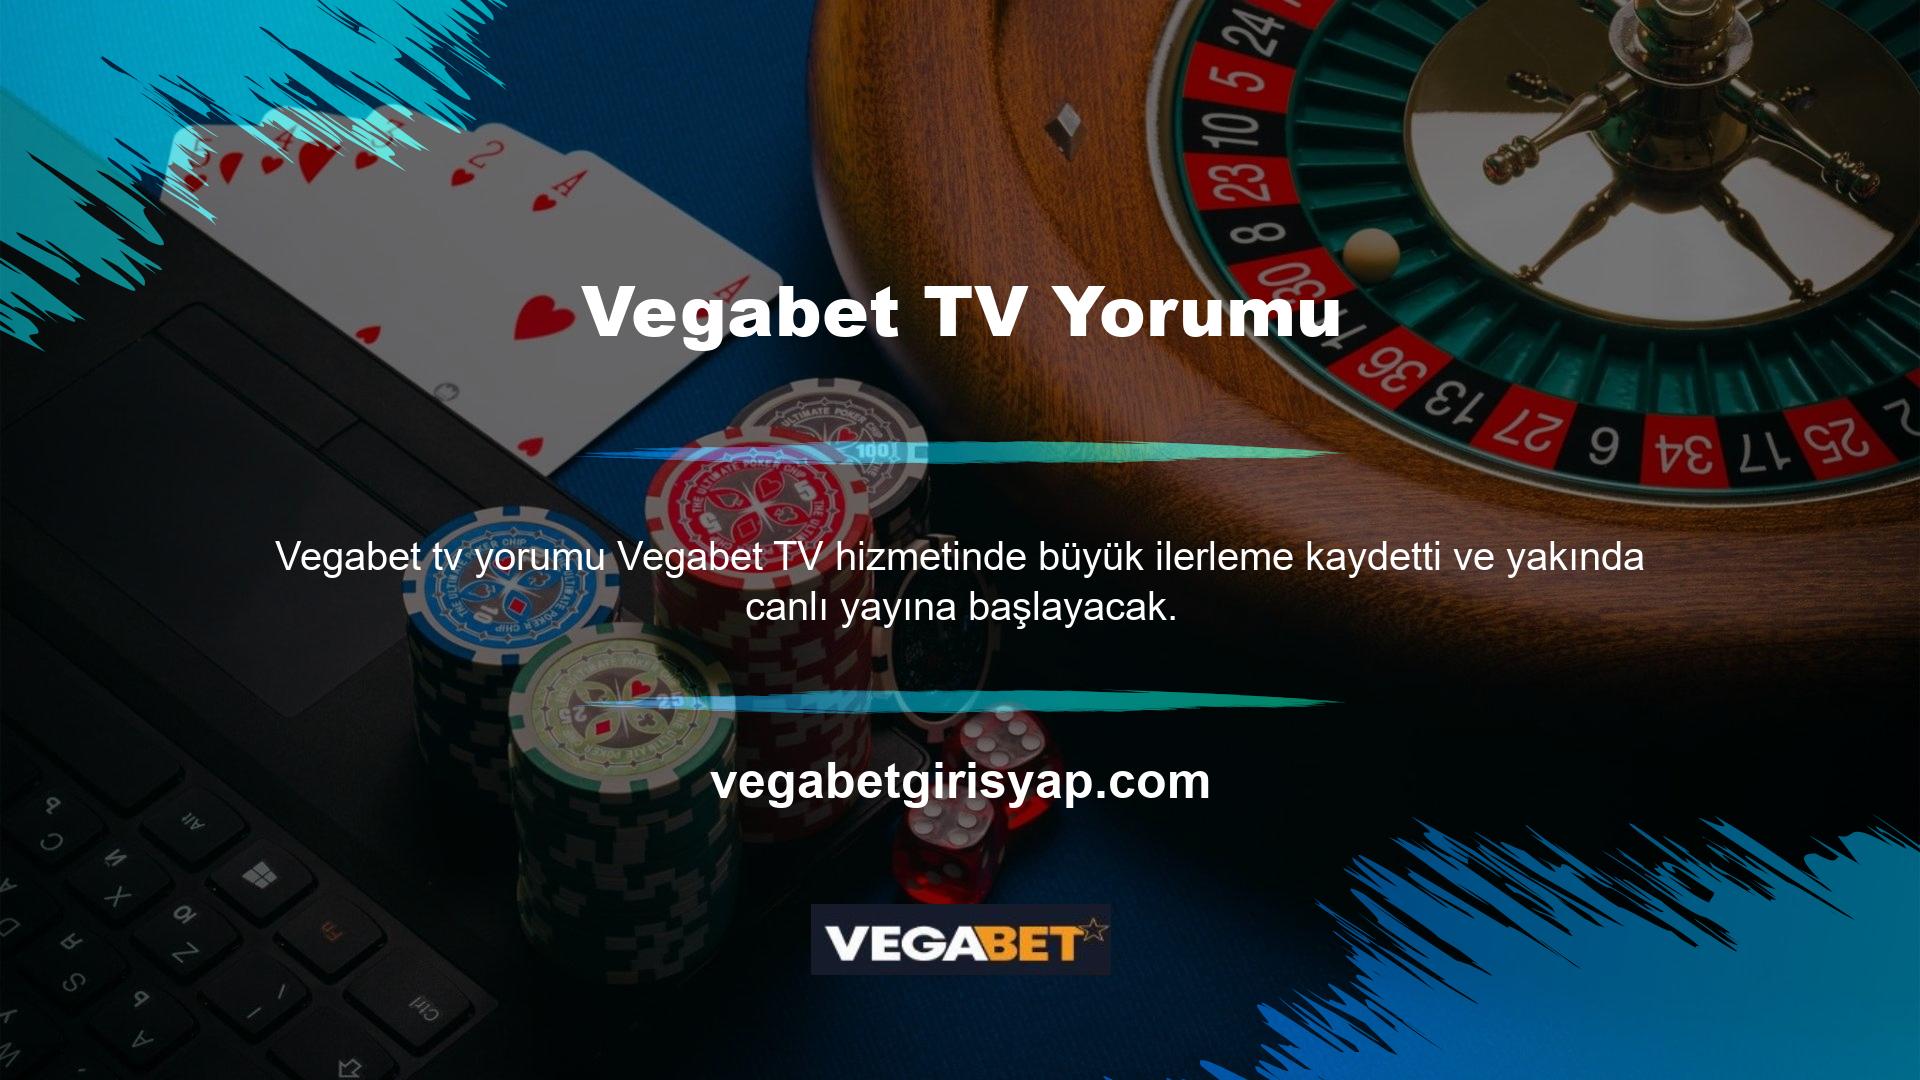 Sonuç olarak Vegabet TV inceleme siteleri son derece detaylı ve zengin içerikleriyle dikkat çekiyor